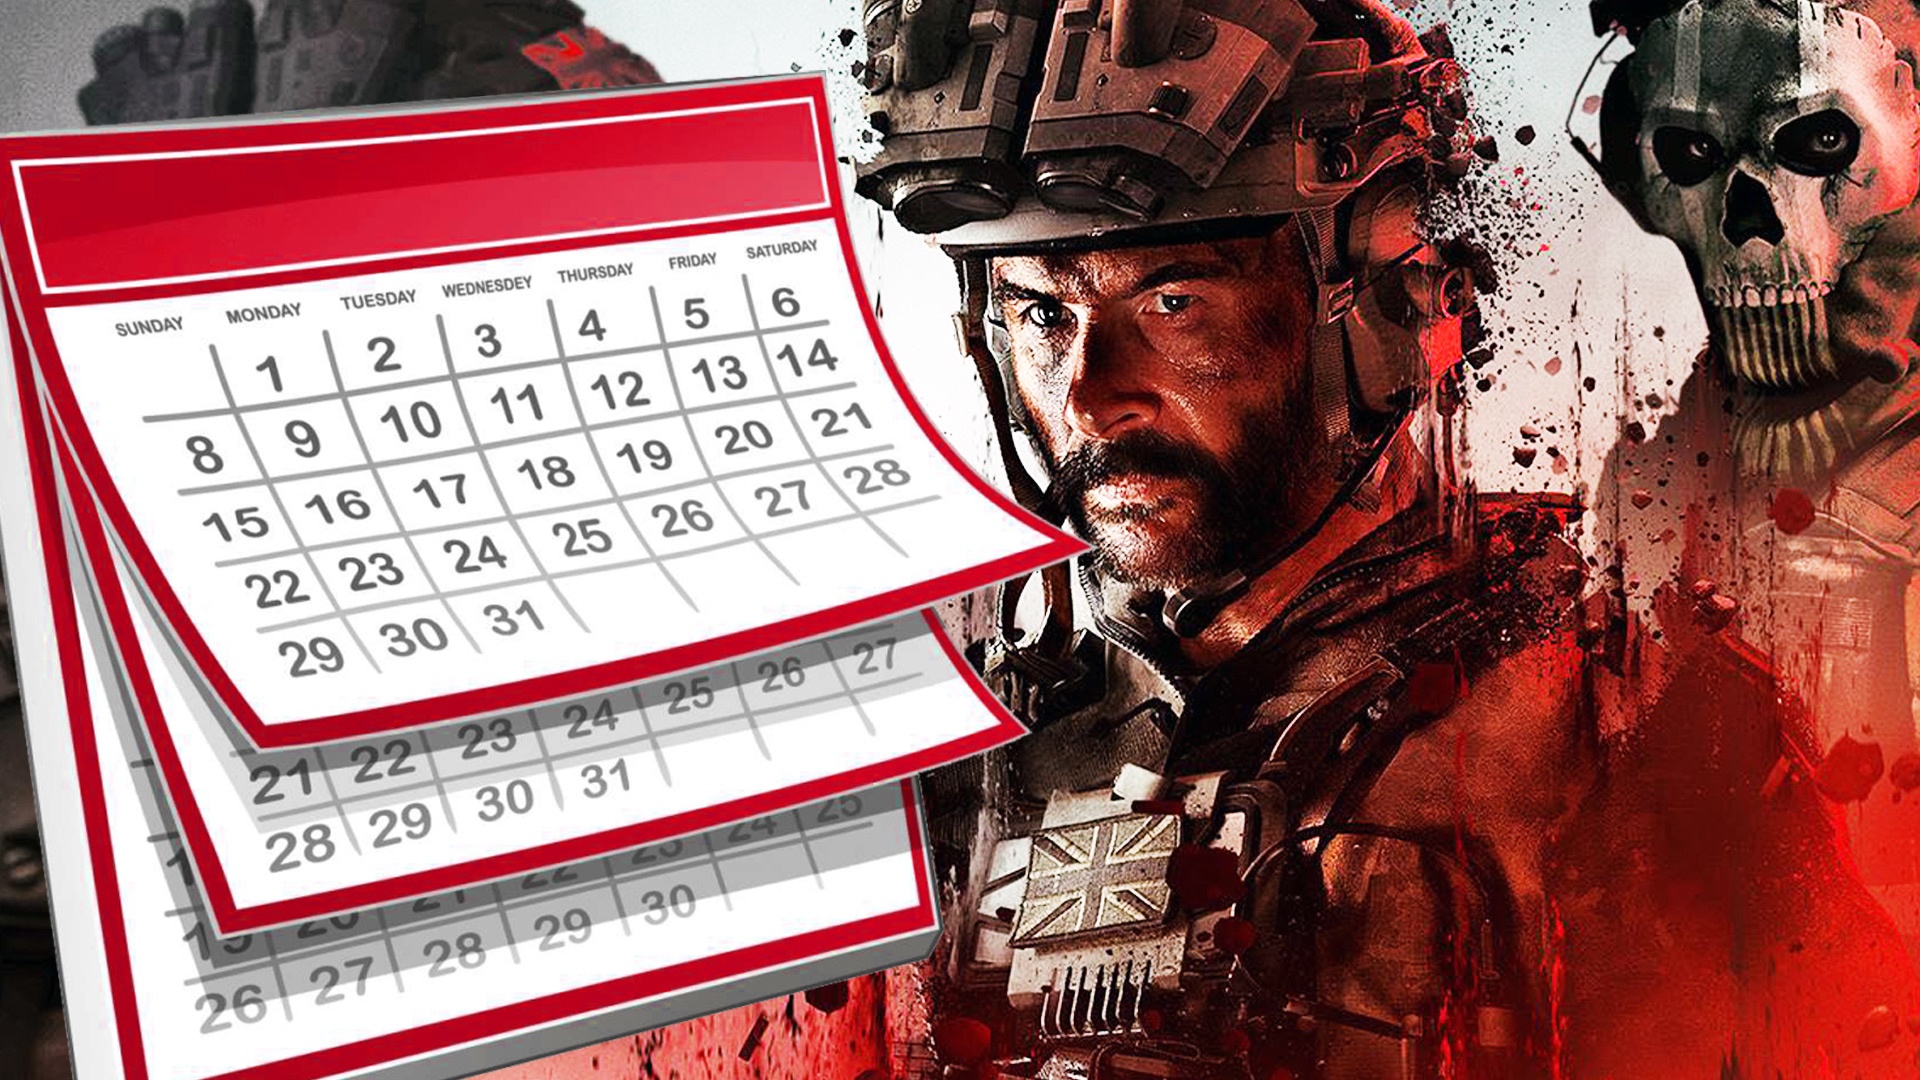 #Enthüllung von Modern Warfare 3: Wann der CoD Next Livestream startet und wie ihr dabei seid